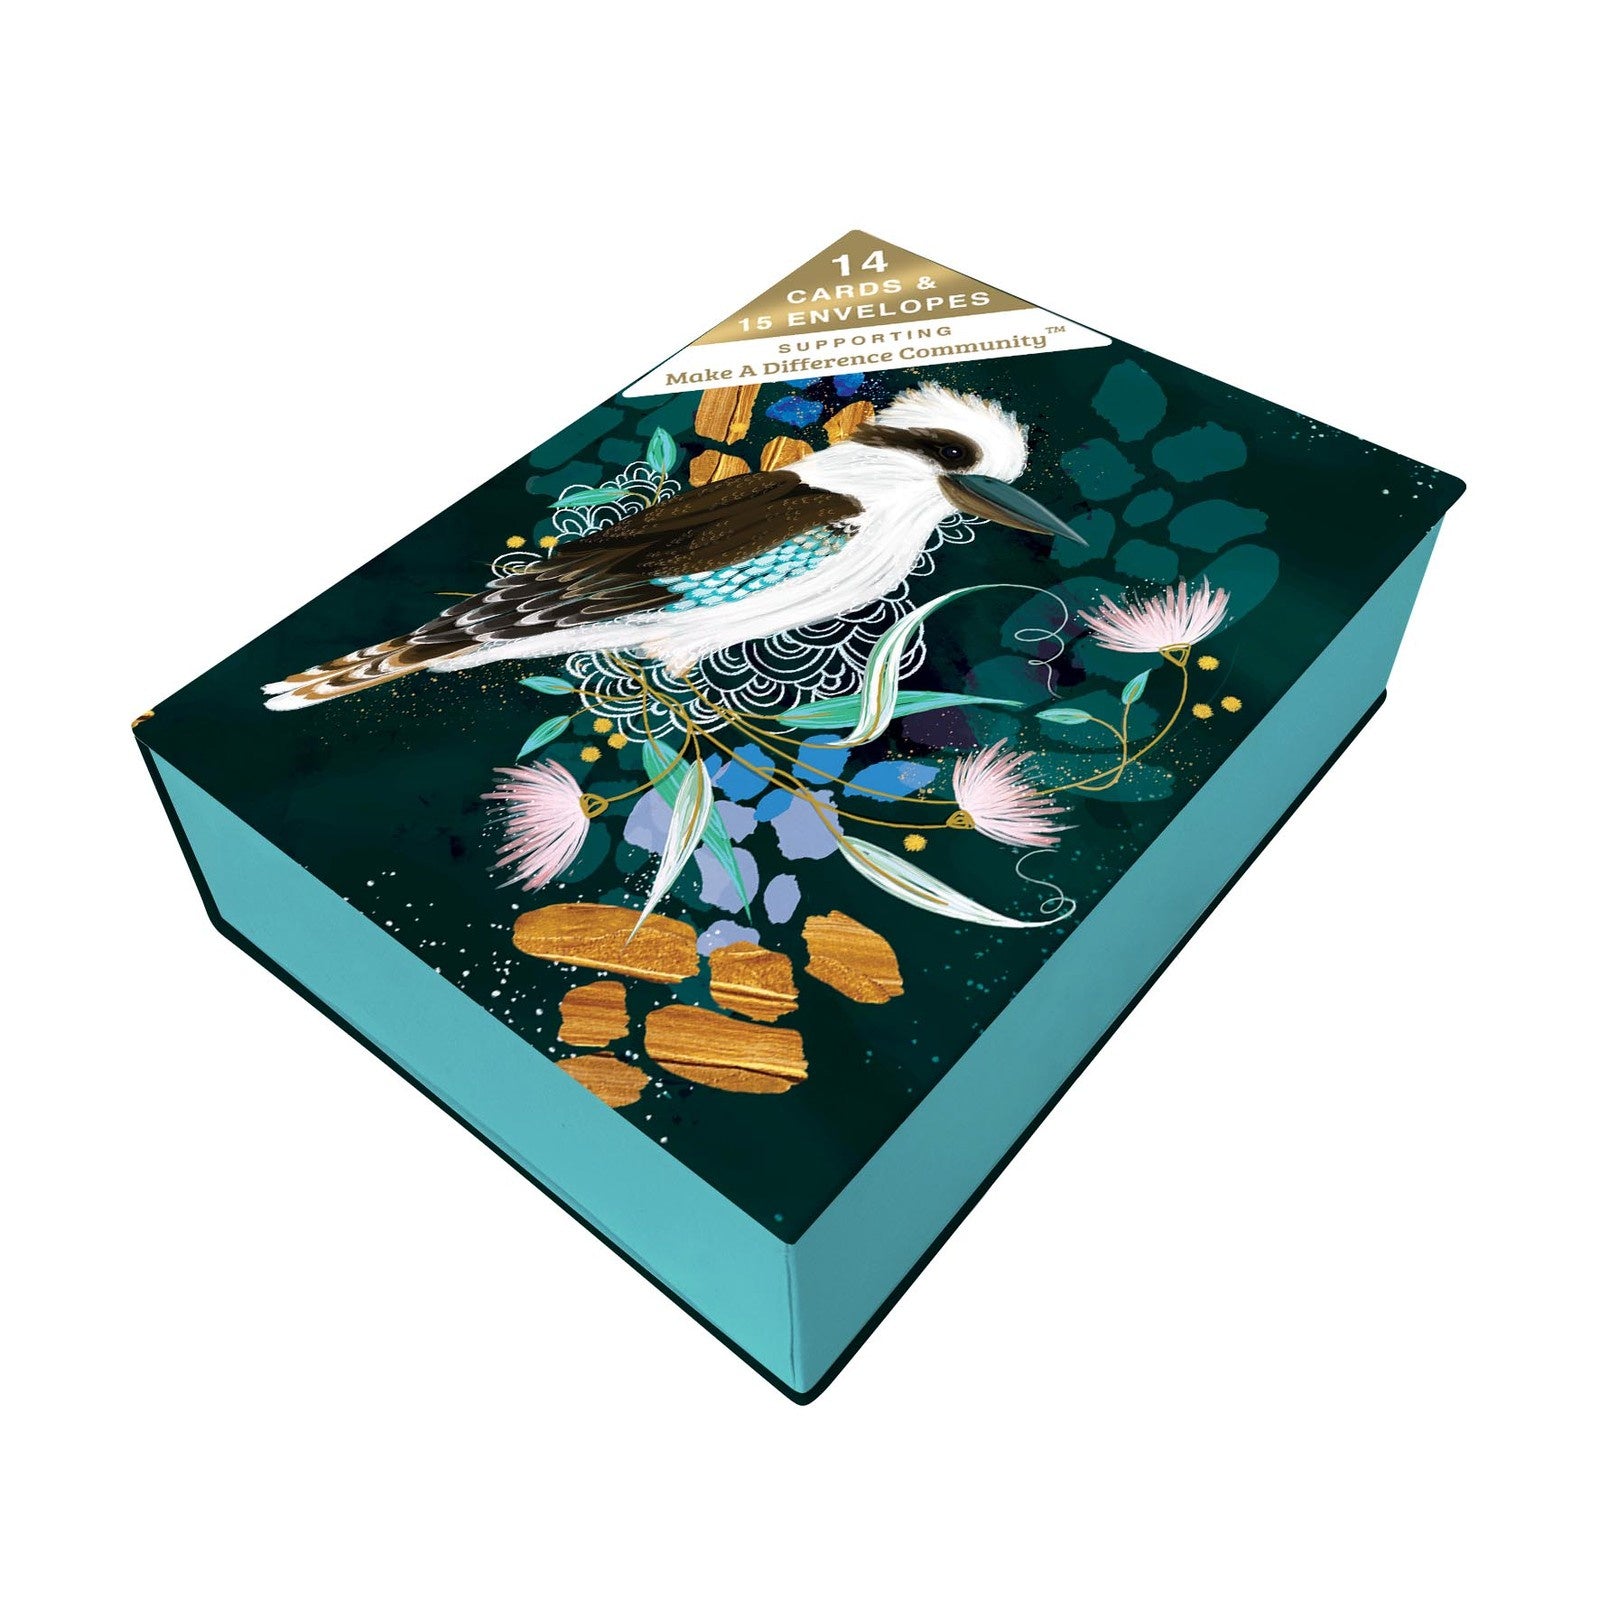 Kookaburra Gift Card Box Set